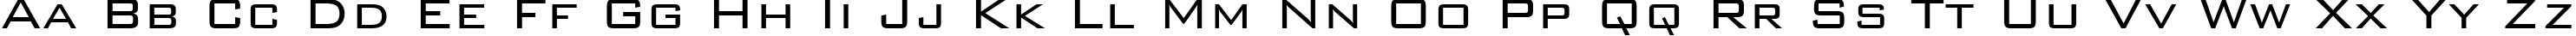 Пример написания английского алфавита шрифтом Bank Gothic Light BT